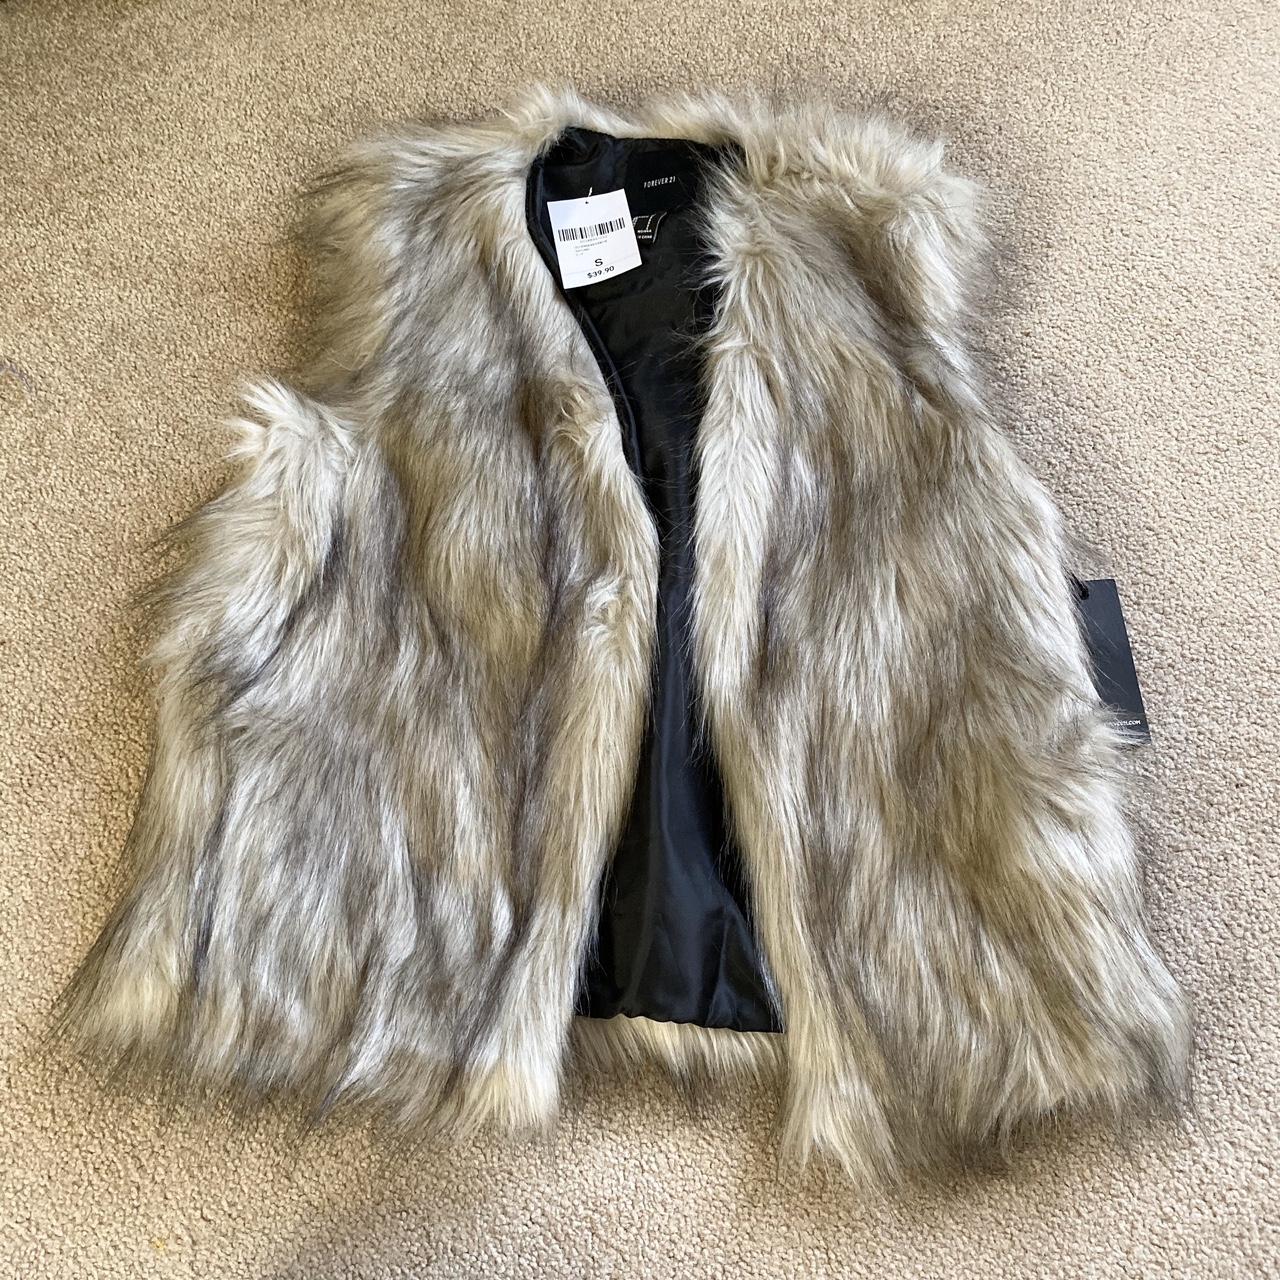 forever 21 faux fur vest: - brand new, never worn! -... - Depop